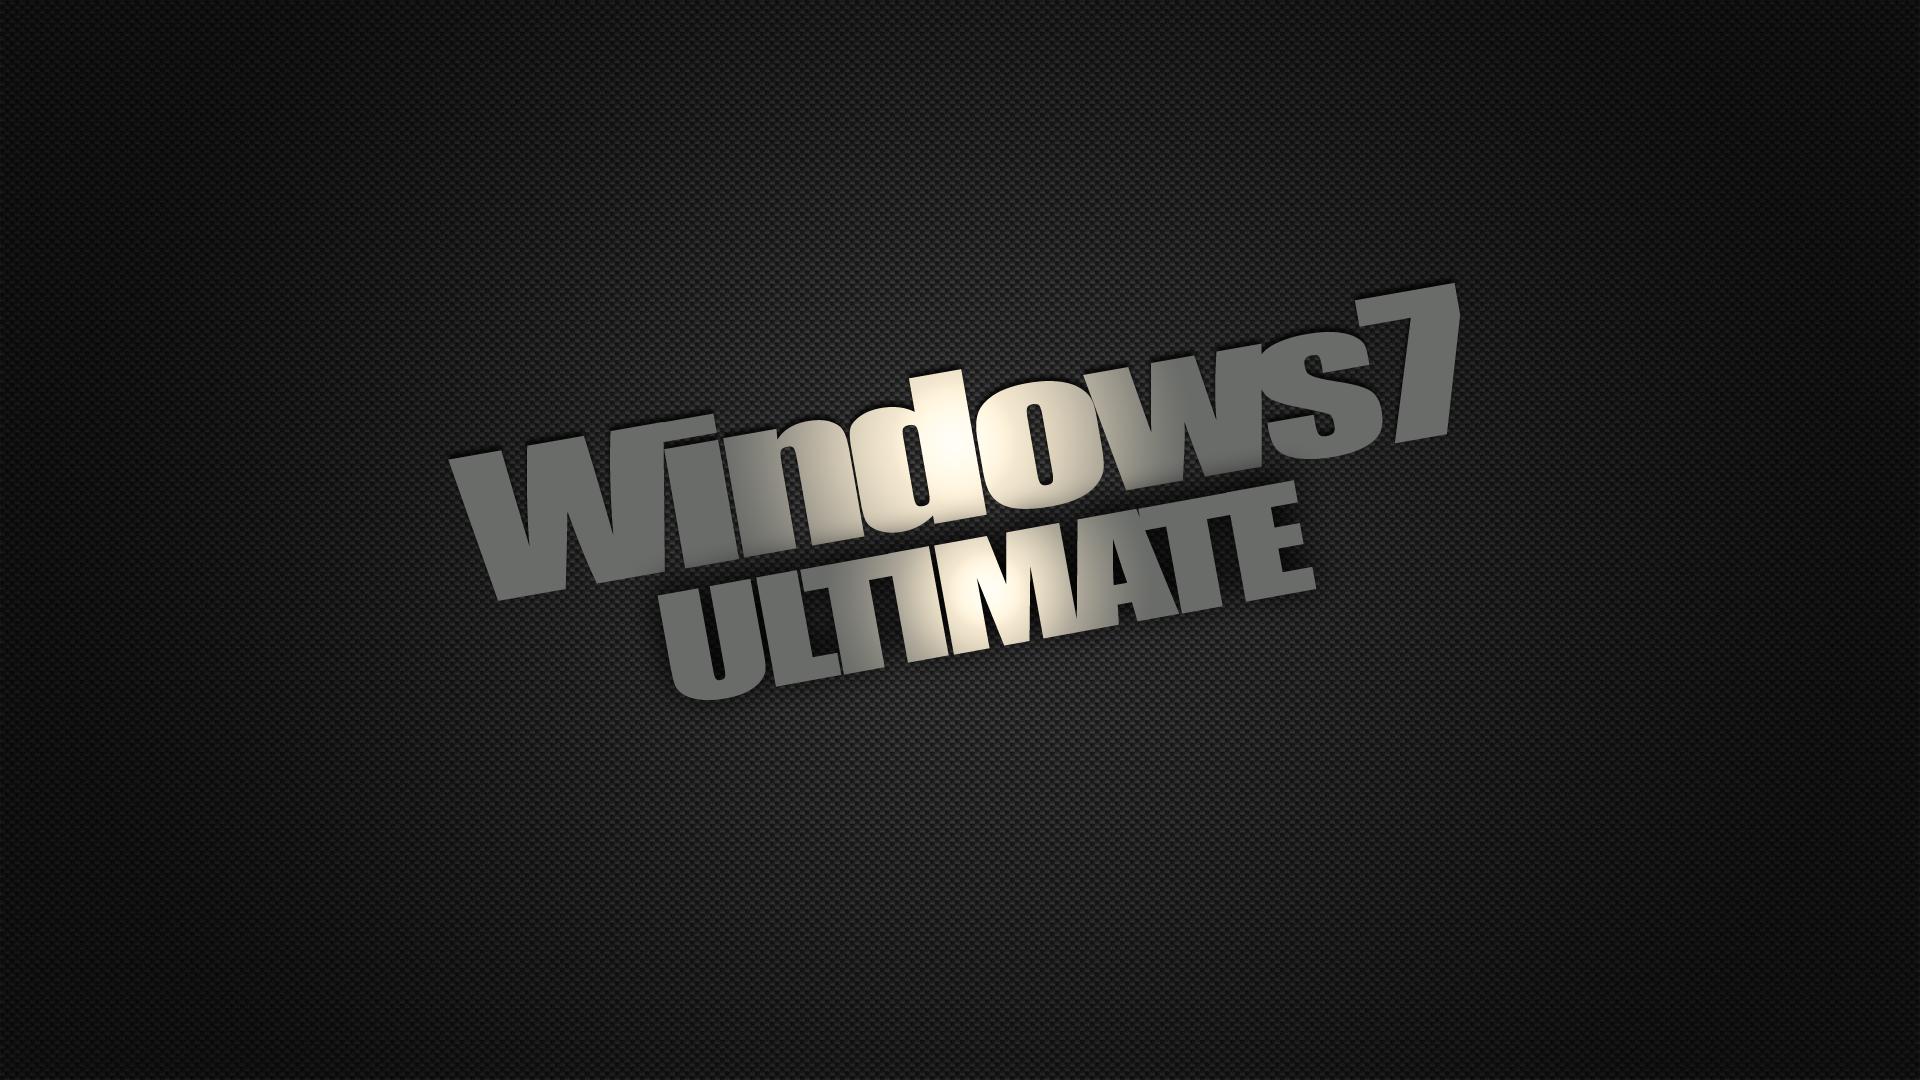 Windows Ultimate Wallpaper 8p4y87n 4usky